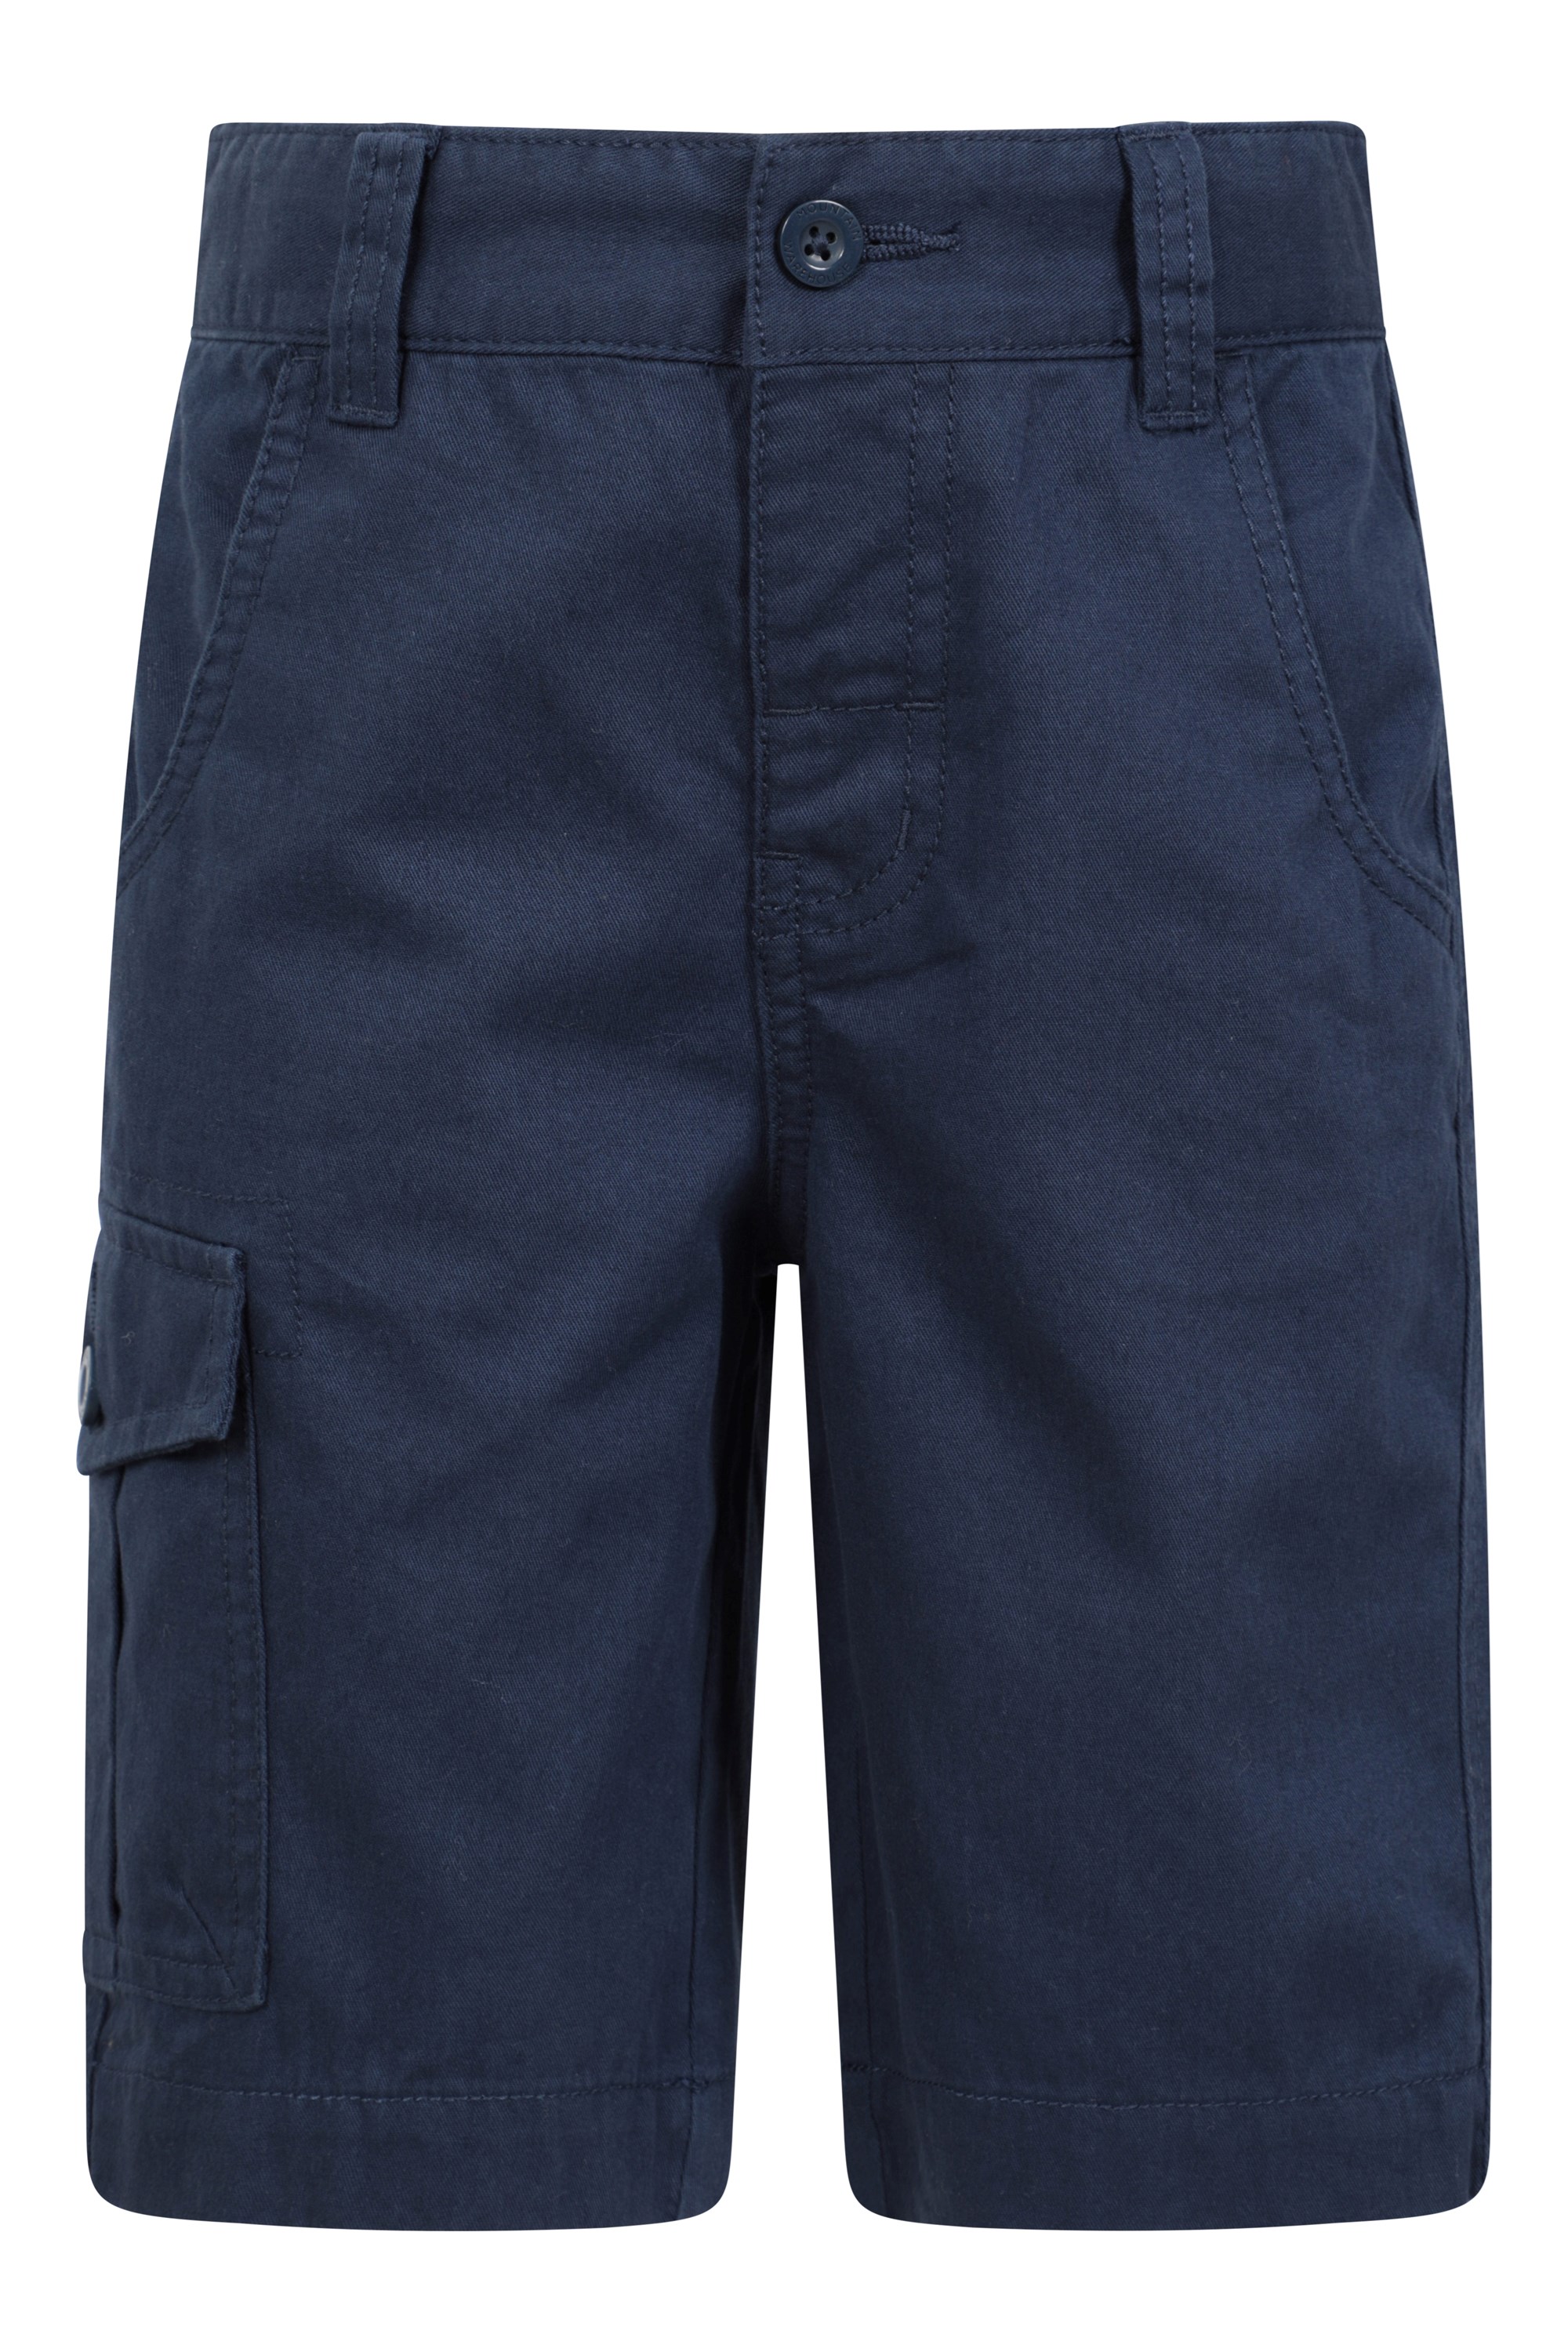 Kids Cargo Shorts - Navy